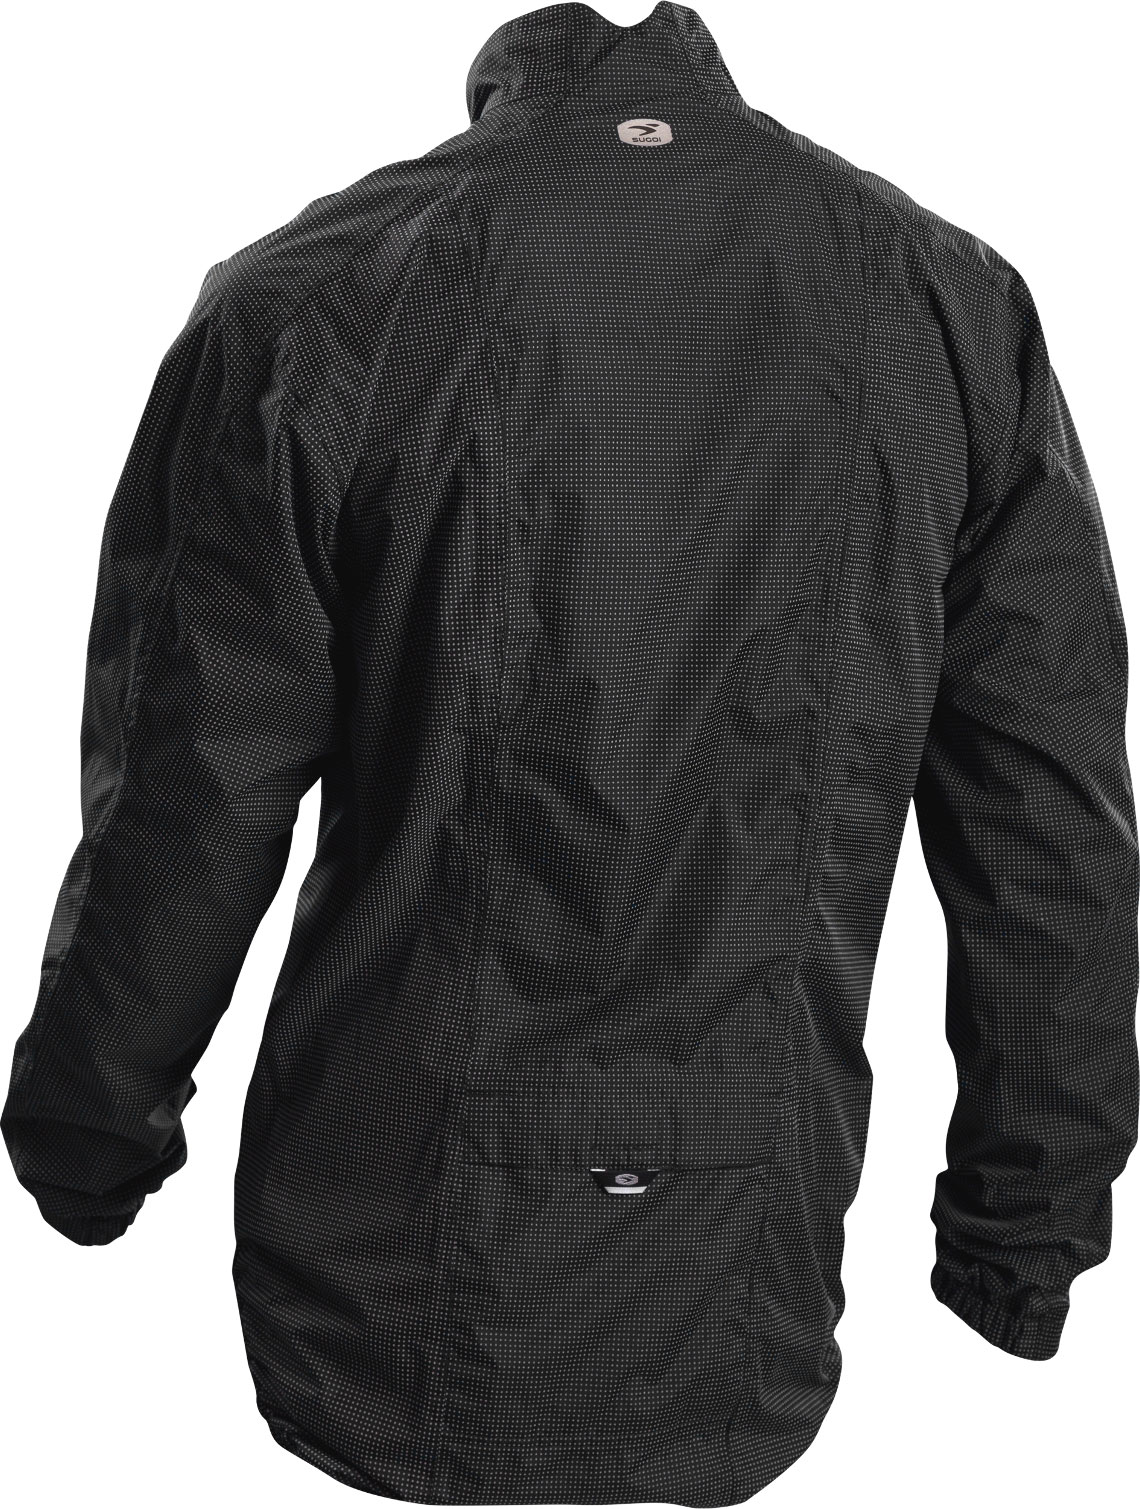 Куртка Sugoi ZAP BIKE, светоотражающая ткань, мужская, BLK (чёрный), M фото 2